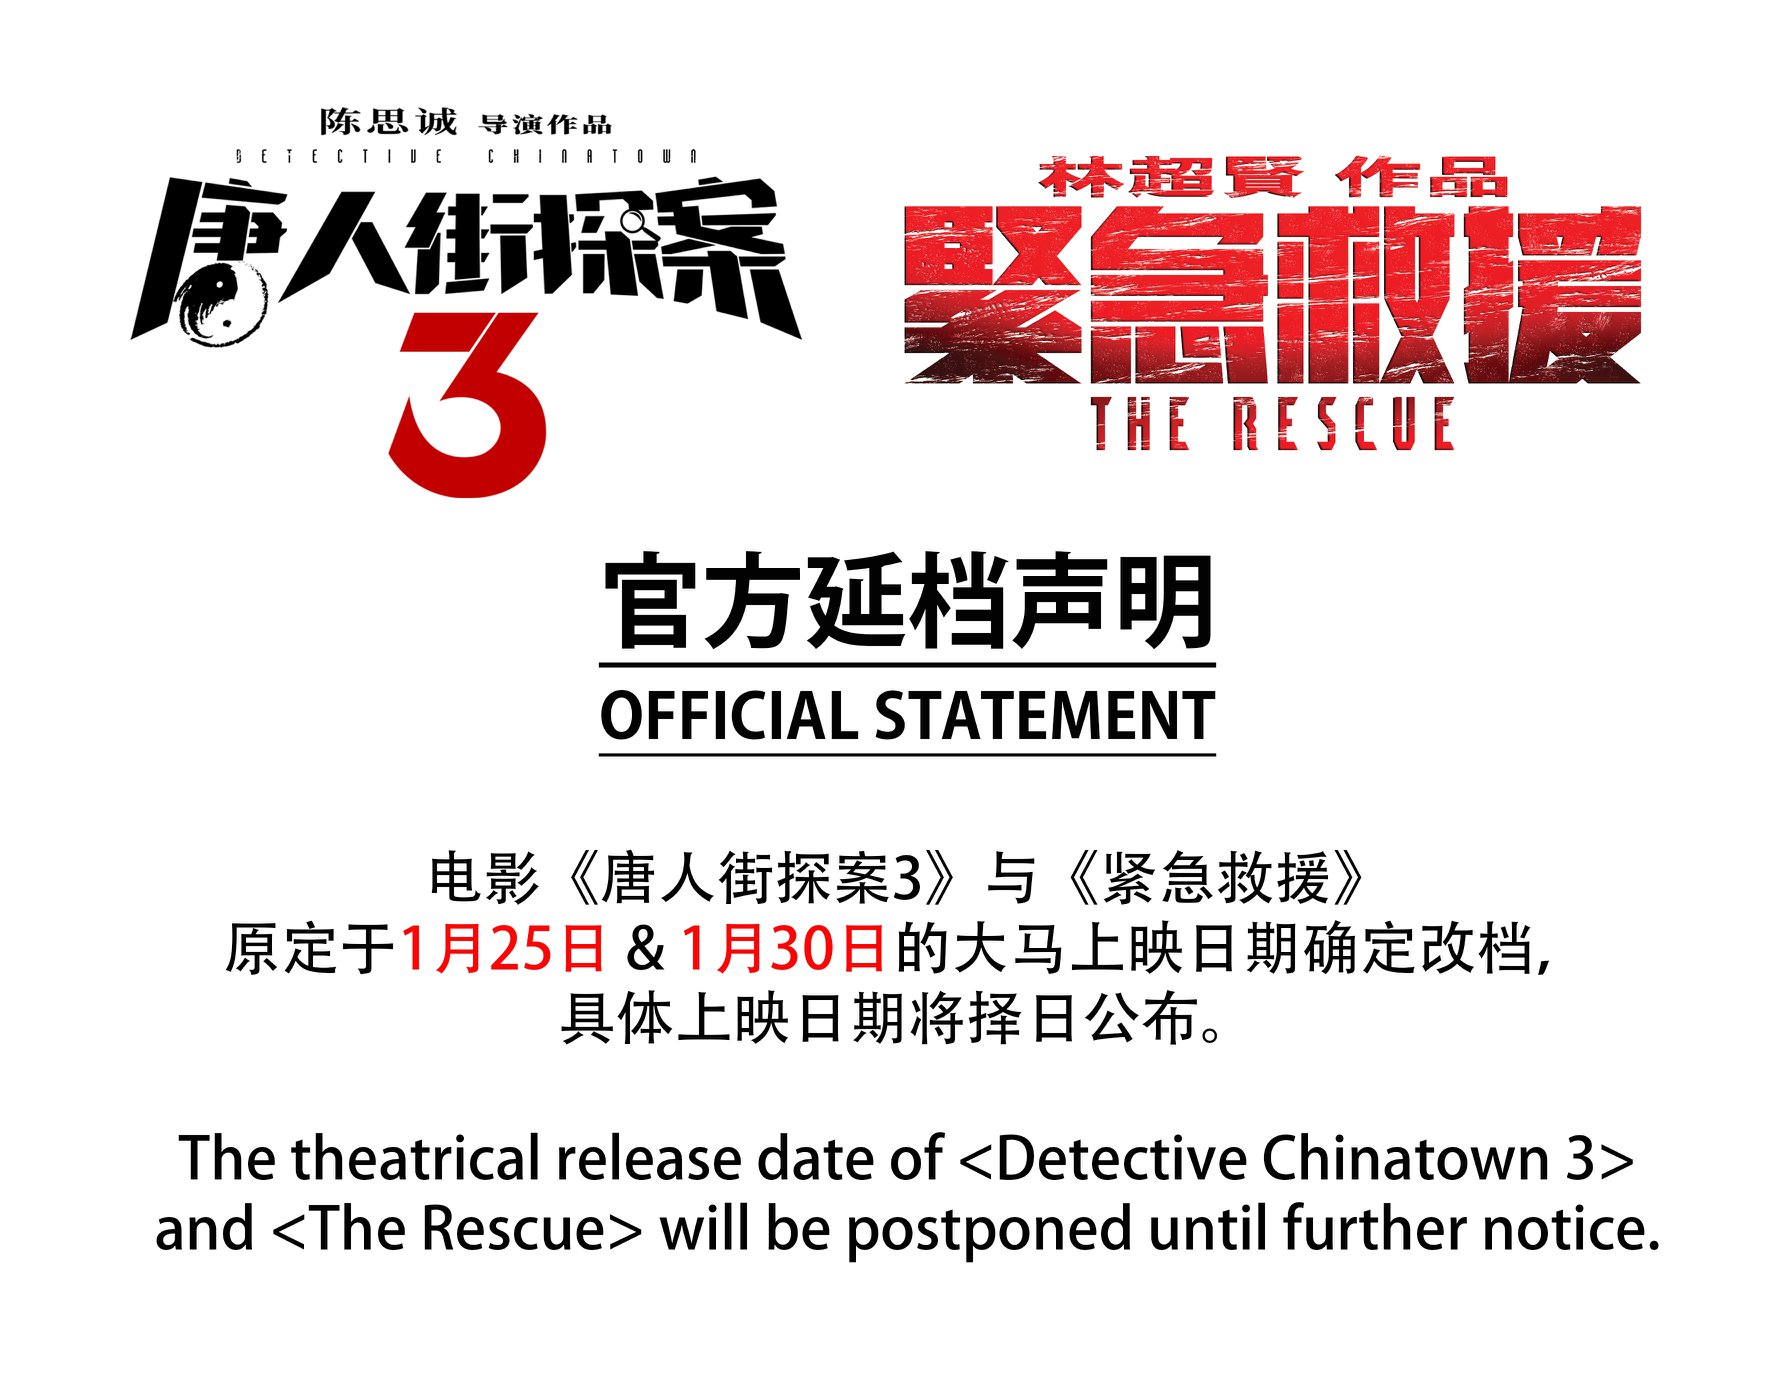 mm2 Malaysia发出声明，宣布《紧急救援》和《唐人街探桉3》延期上映。